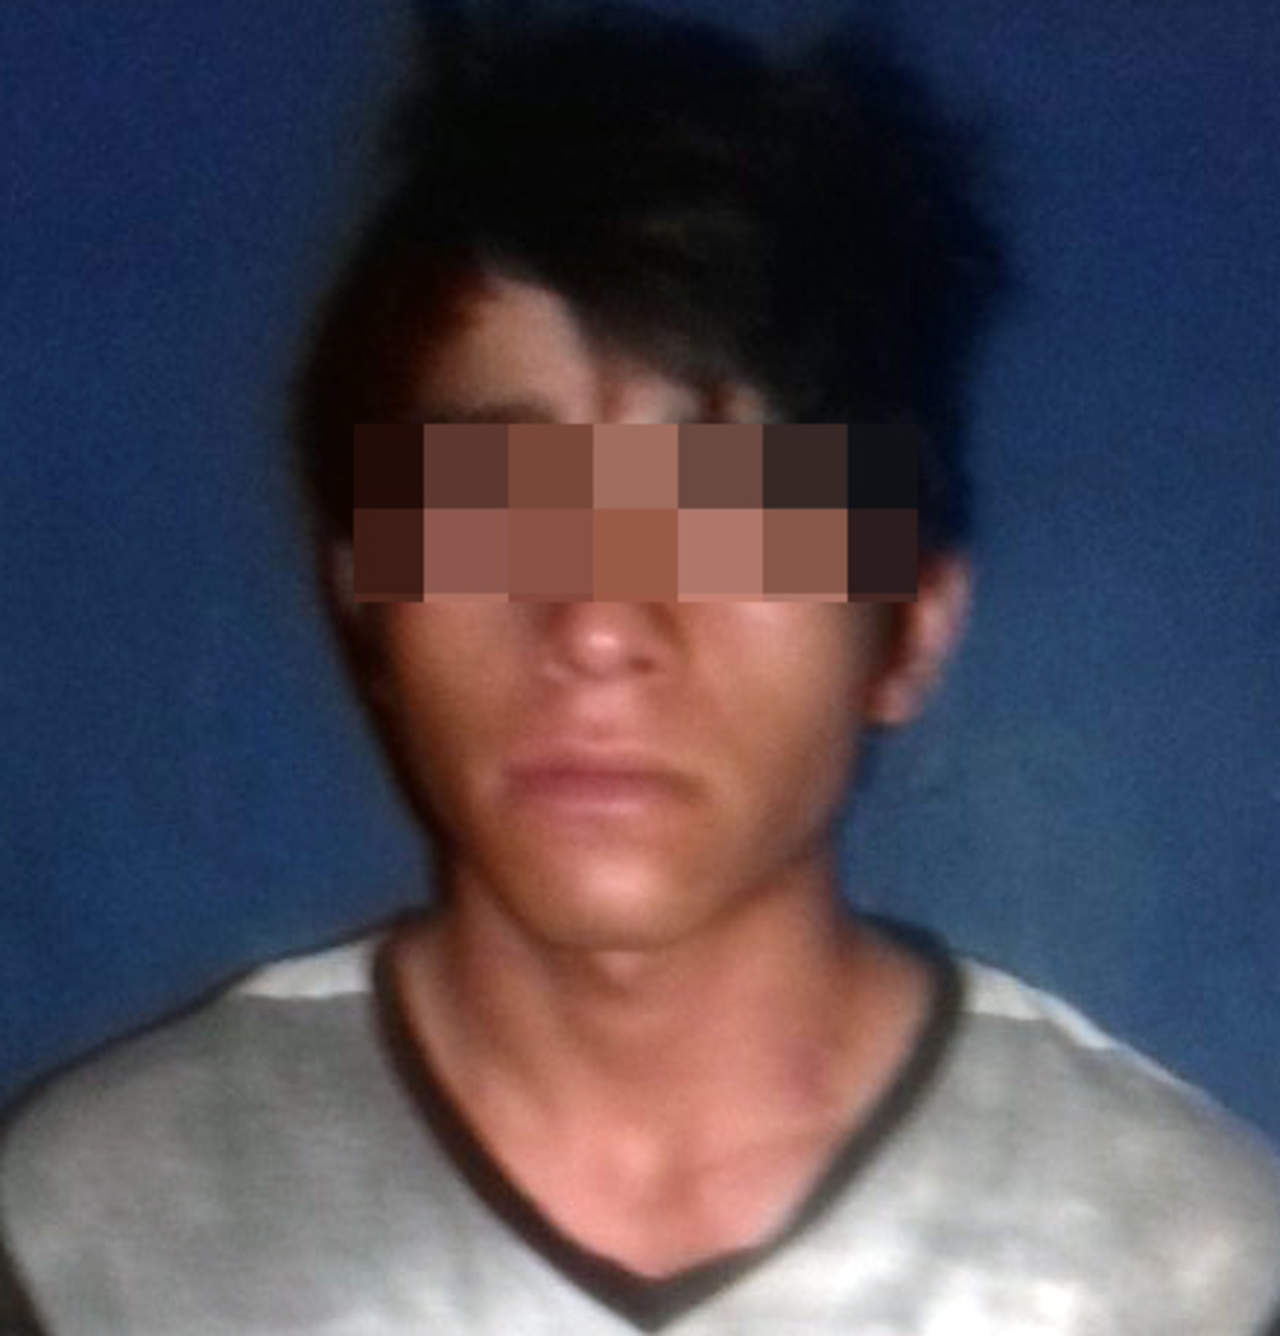 Se trataba del joven 'Jorge' de 19 años de edad, quien fue detenido y llevado más tarde hasta las oficinas del Ministerio Público de la localidad. (ESPECIAL)